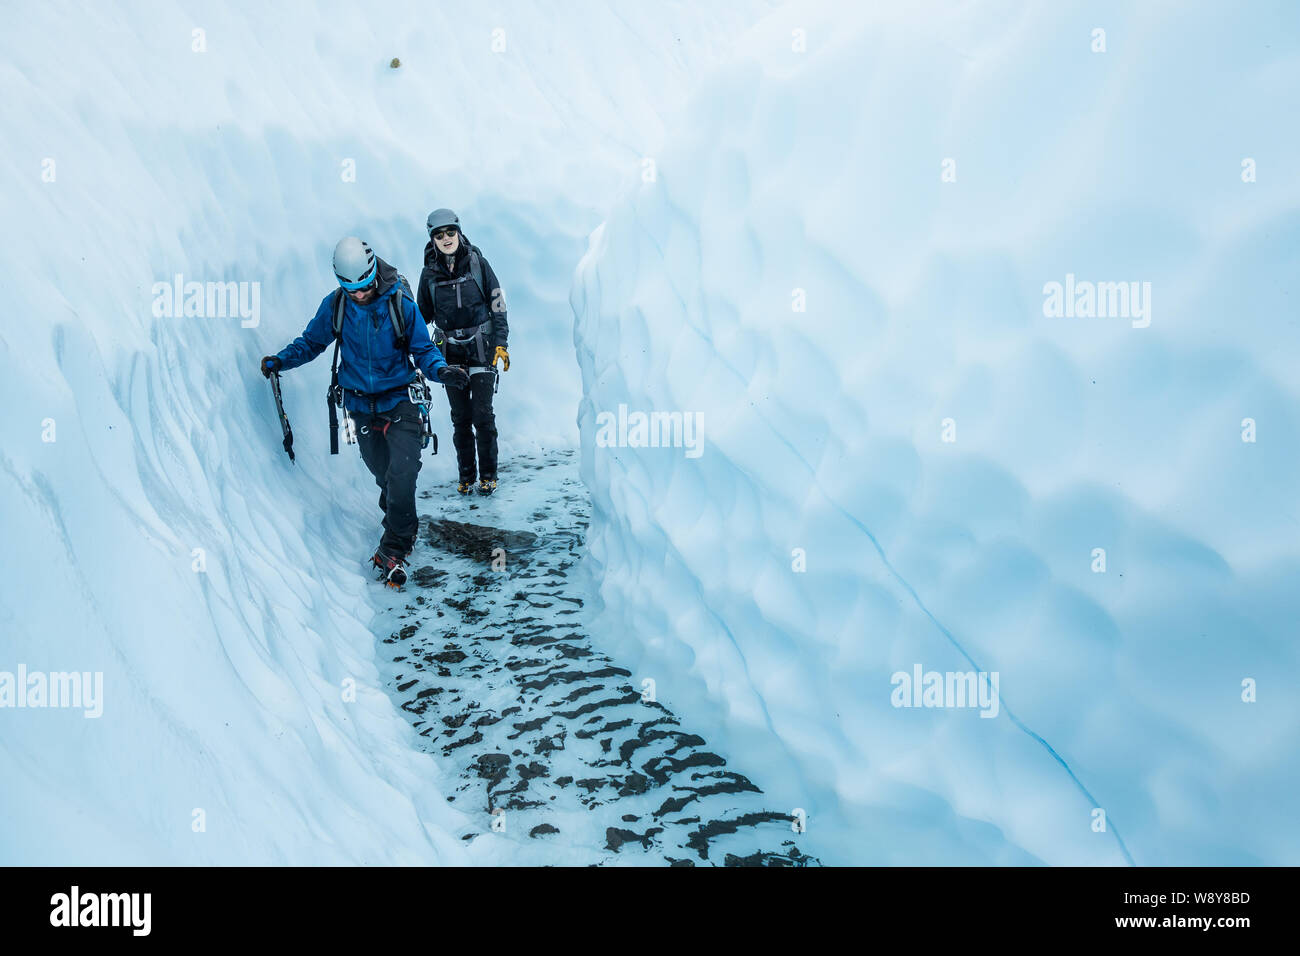 Giovane uomo e donna a piedi attraverso un canyon del ghiacciaio sul ghiacciaio Matanuska. Nel fondo del canyon è chiara, acqua fredda abbastanza profondo per Foto Stock